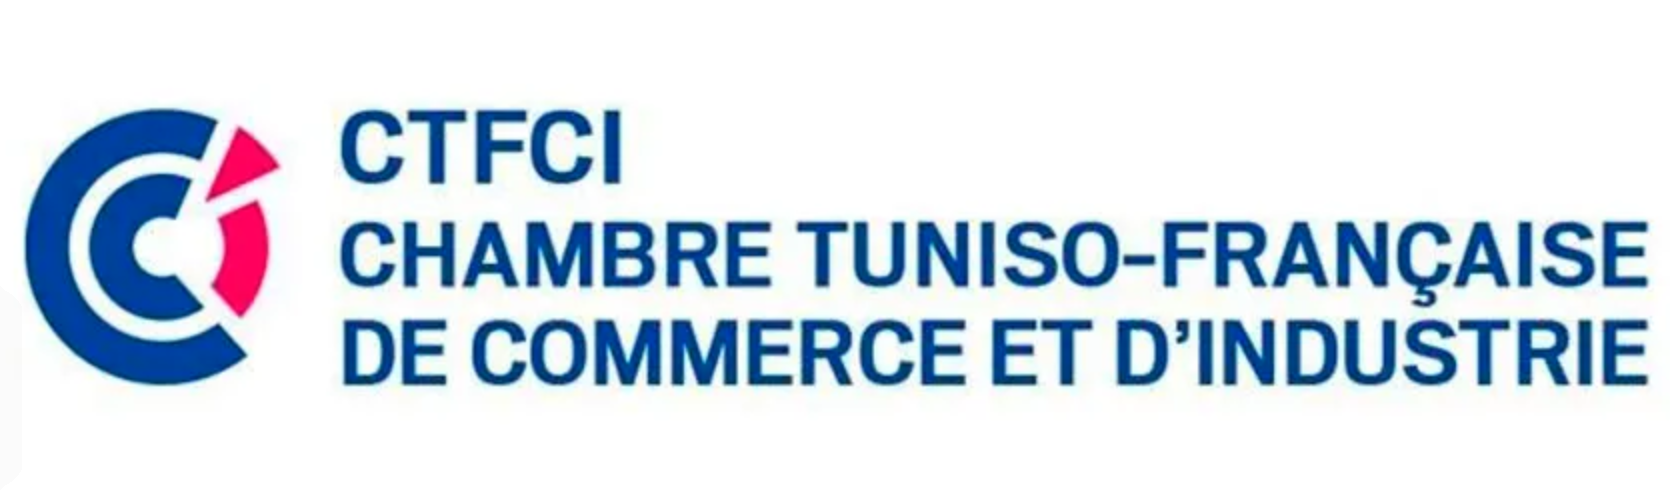 Business France et Ctfci en Tunisie, développer l’investissement et consolider le partenariat